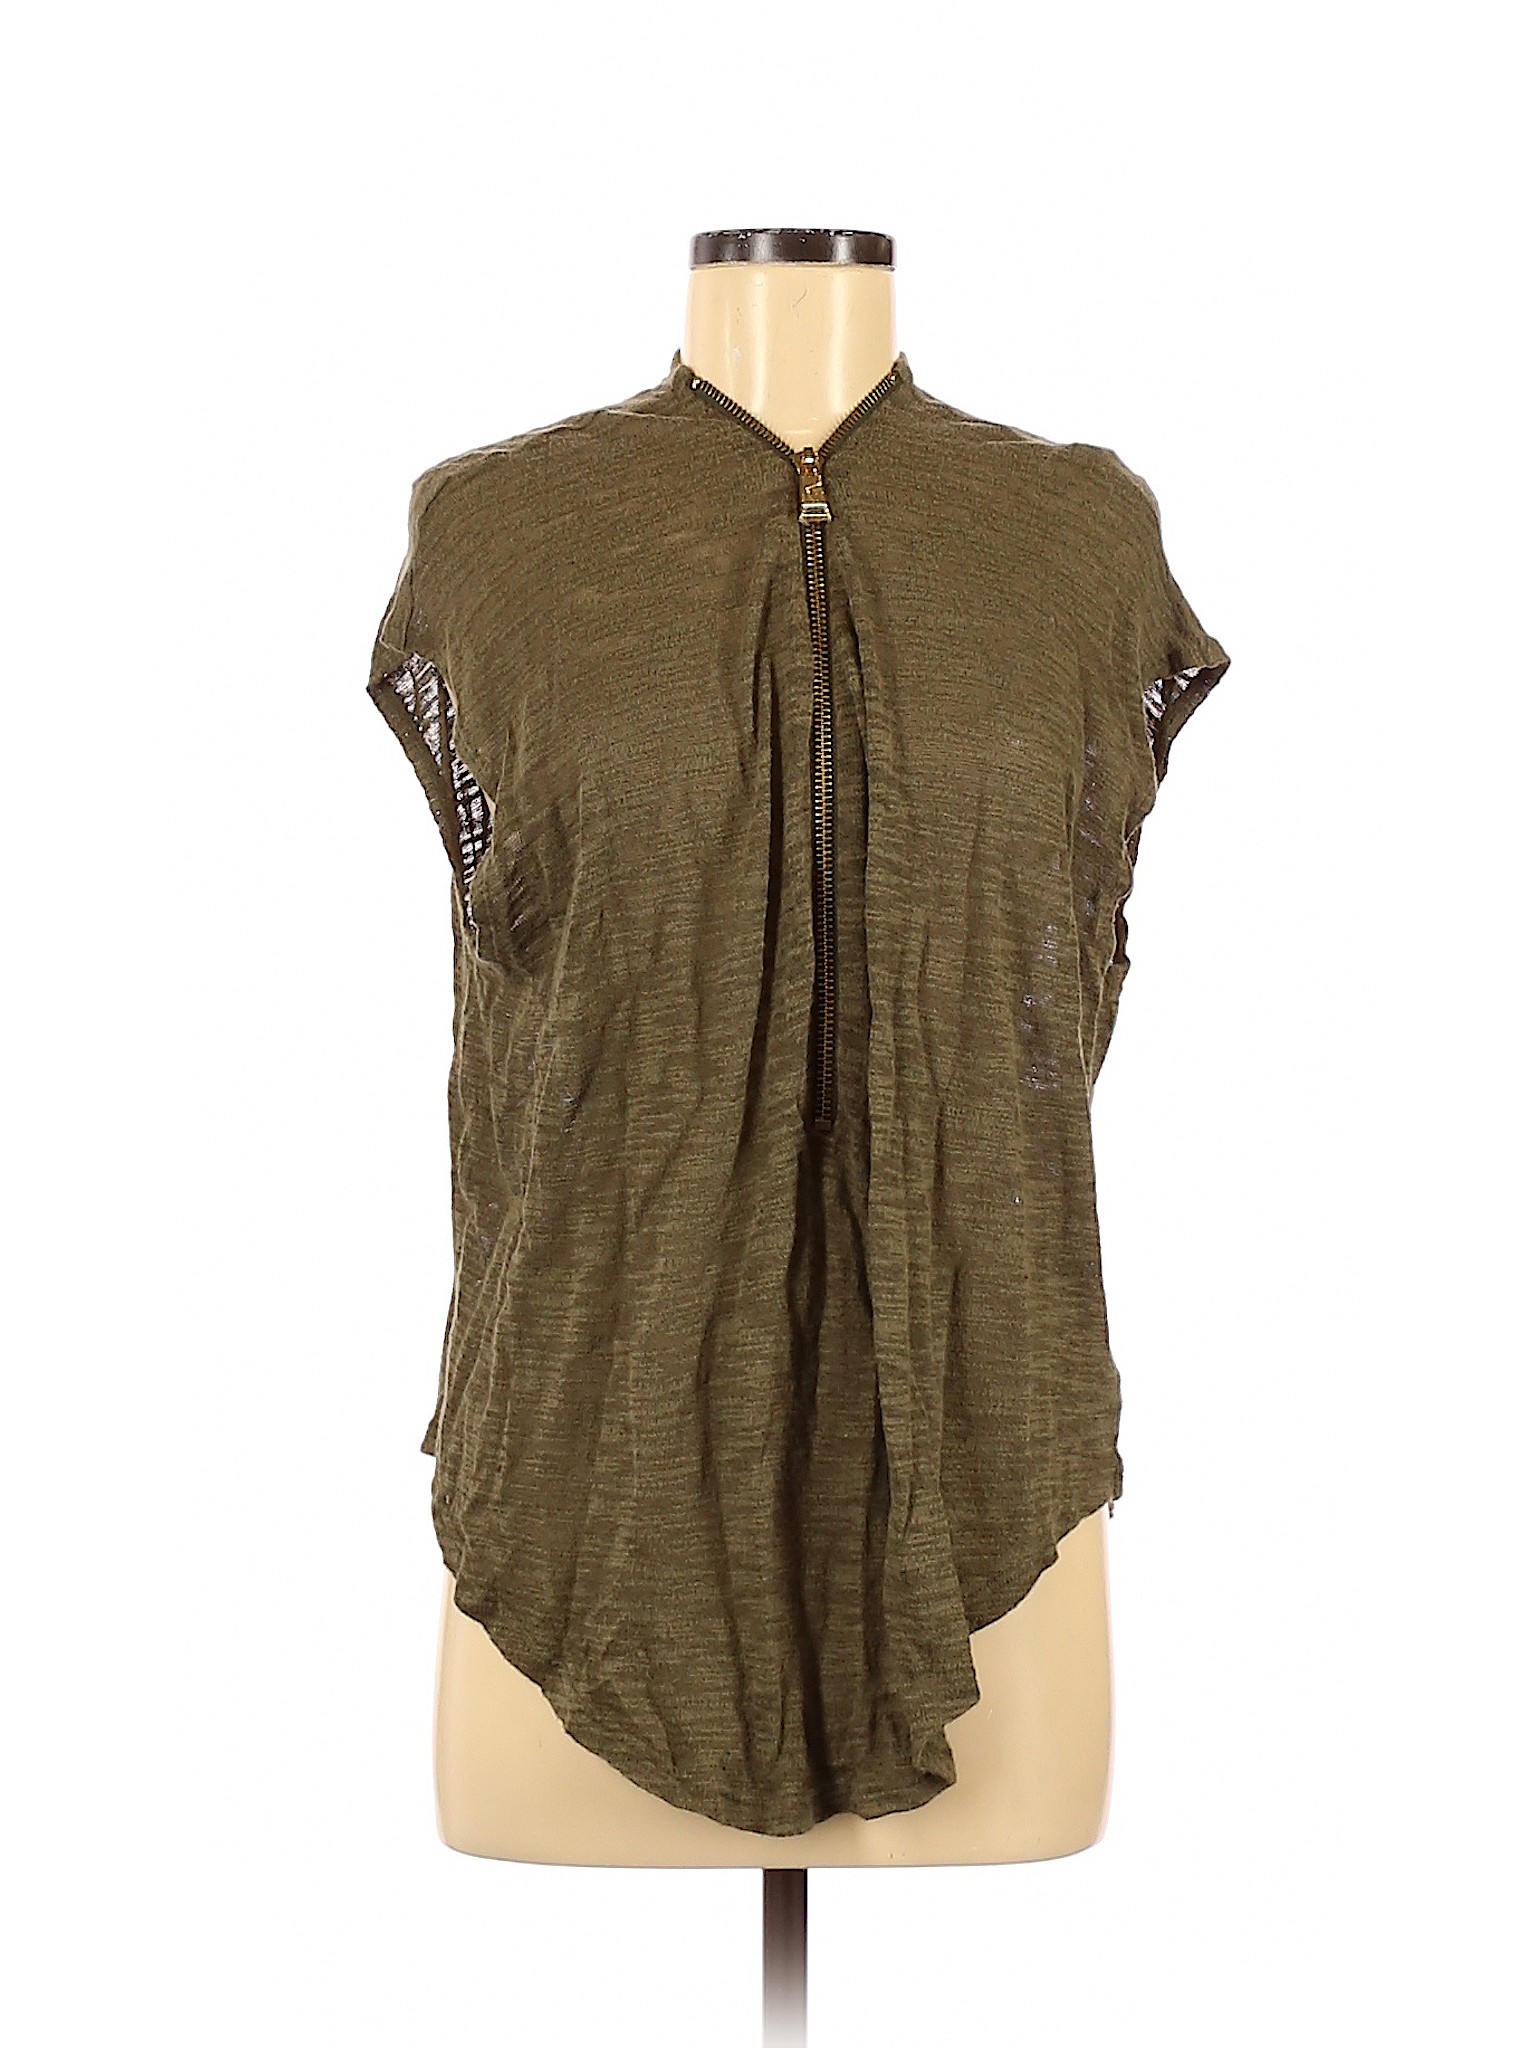 Express Women Green Short Sleeve Top XS | eBay